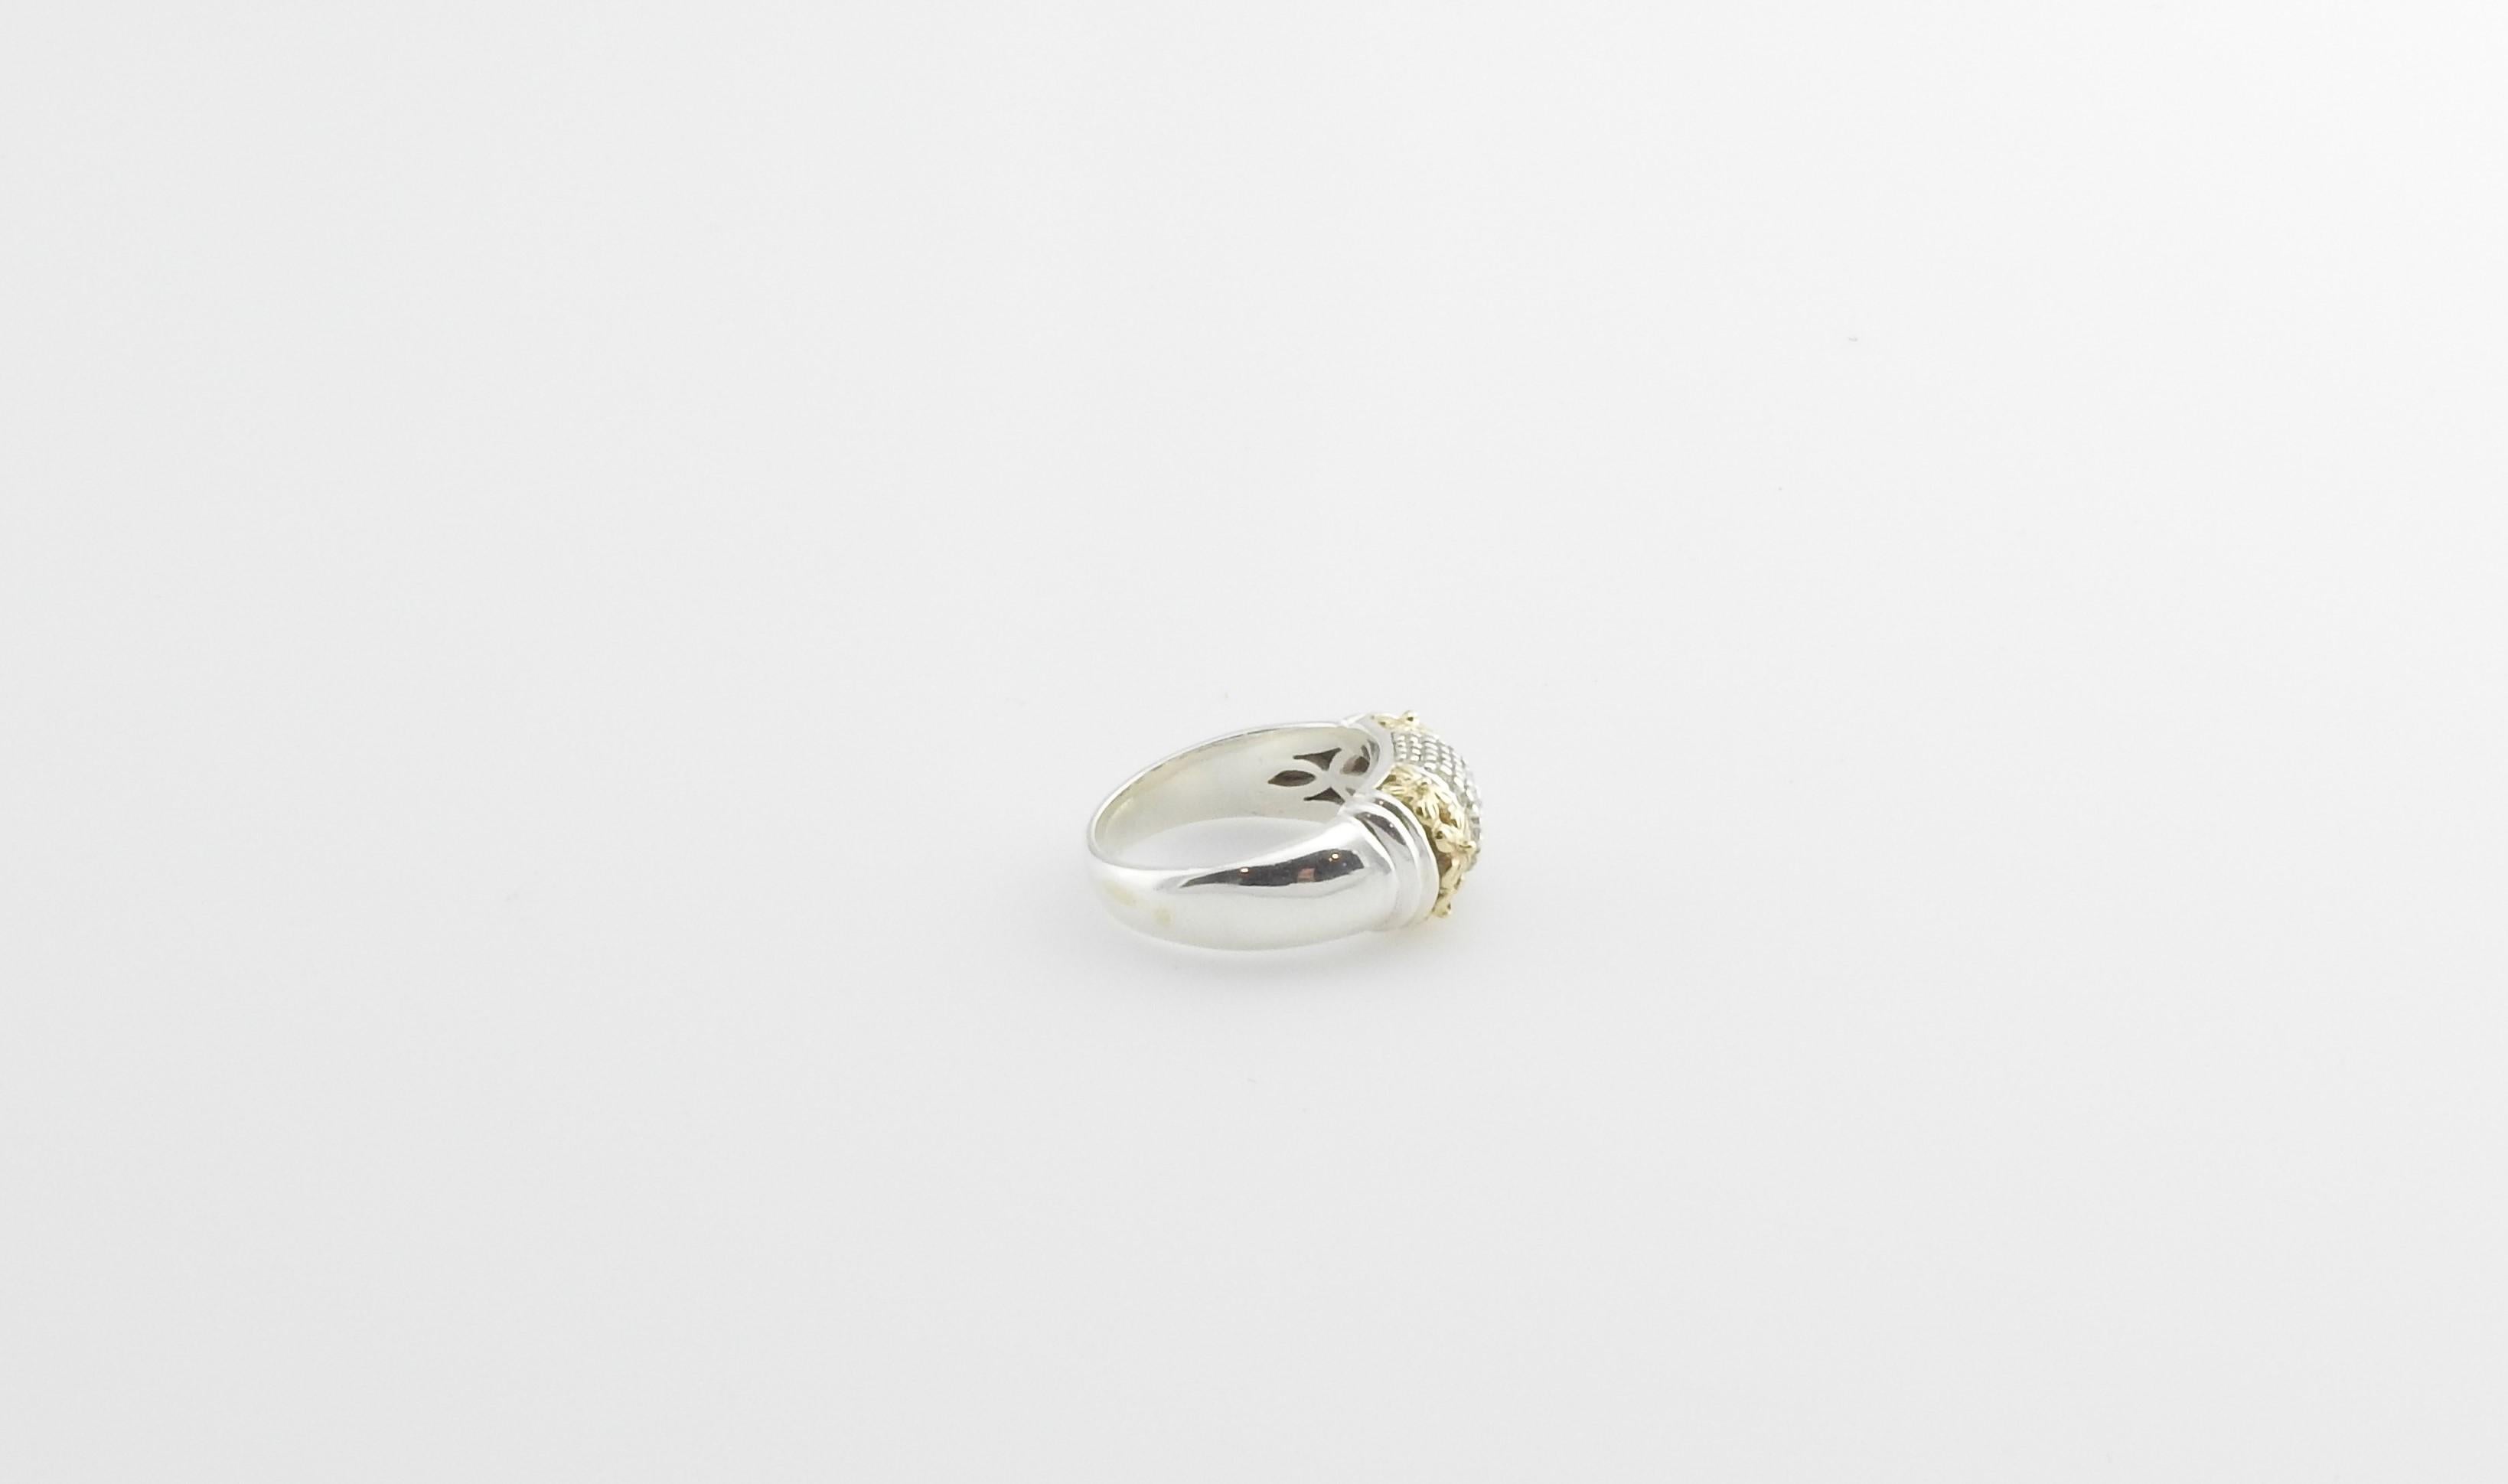 Gabrielle Bruni Sterling Silber, 14K Gelbgold und Diamant Ring Größe 7,5

Dieser schöne Ring ist mit sieben runden Diamanten im Brillantschliff besetzt, die in wunderschönes Sterlingsilber und 14 Karat Gelbgold gefasst sind.

Breite: 9 mm. Schaft: 4